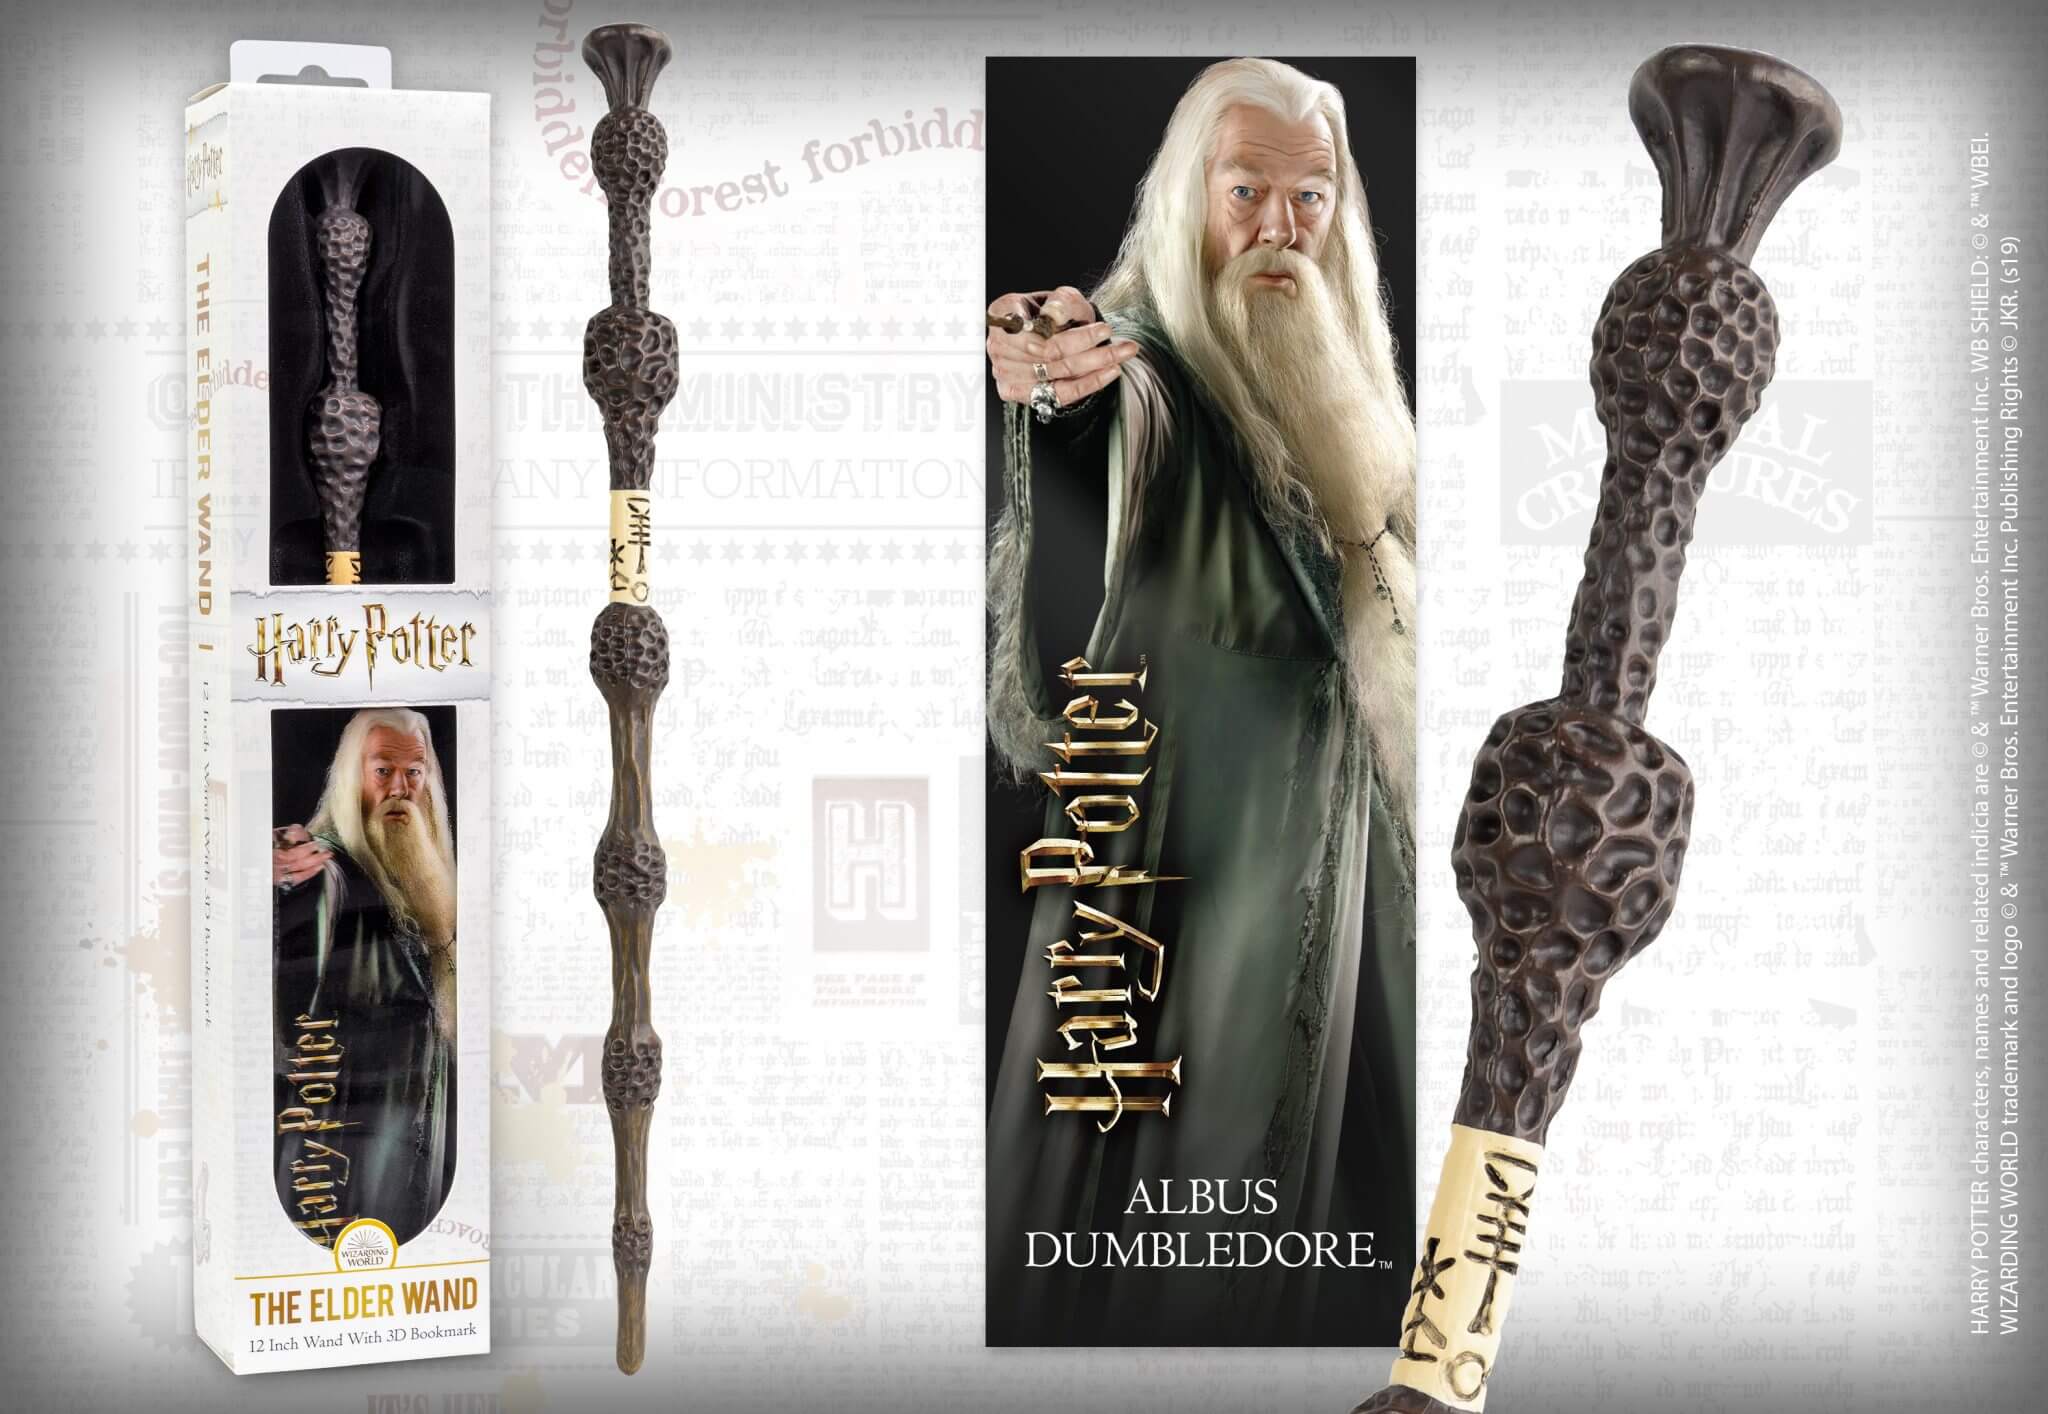 Stylo baguette magique Dumbledore, Harry Potter